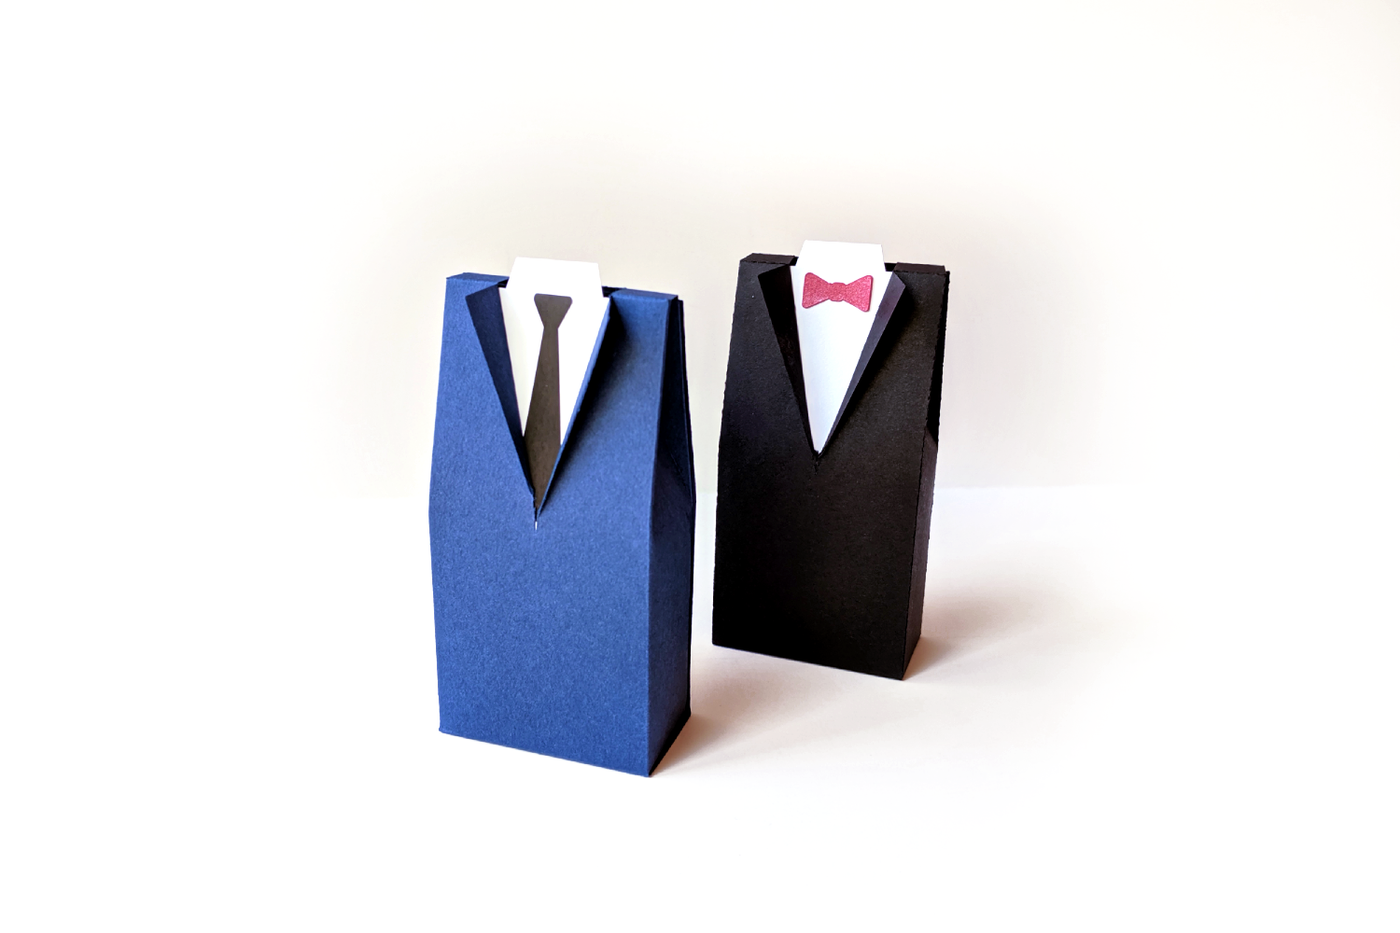 Tuxedo and suit box designs